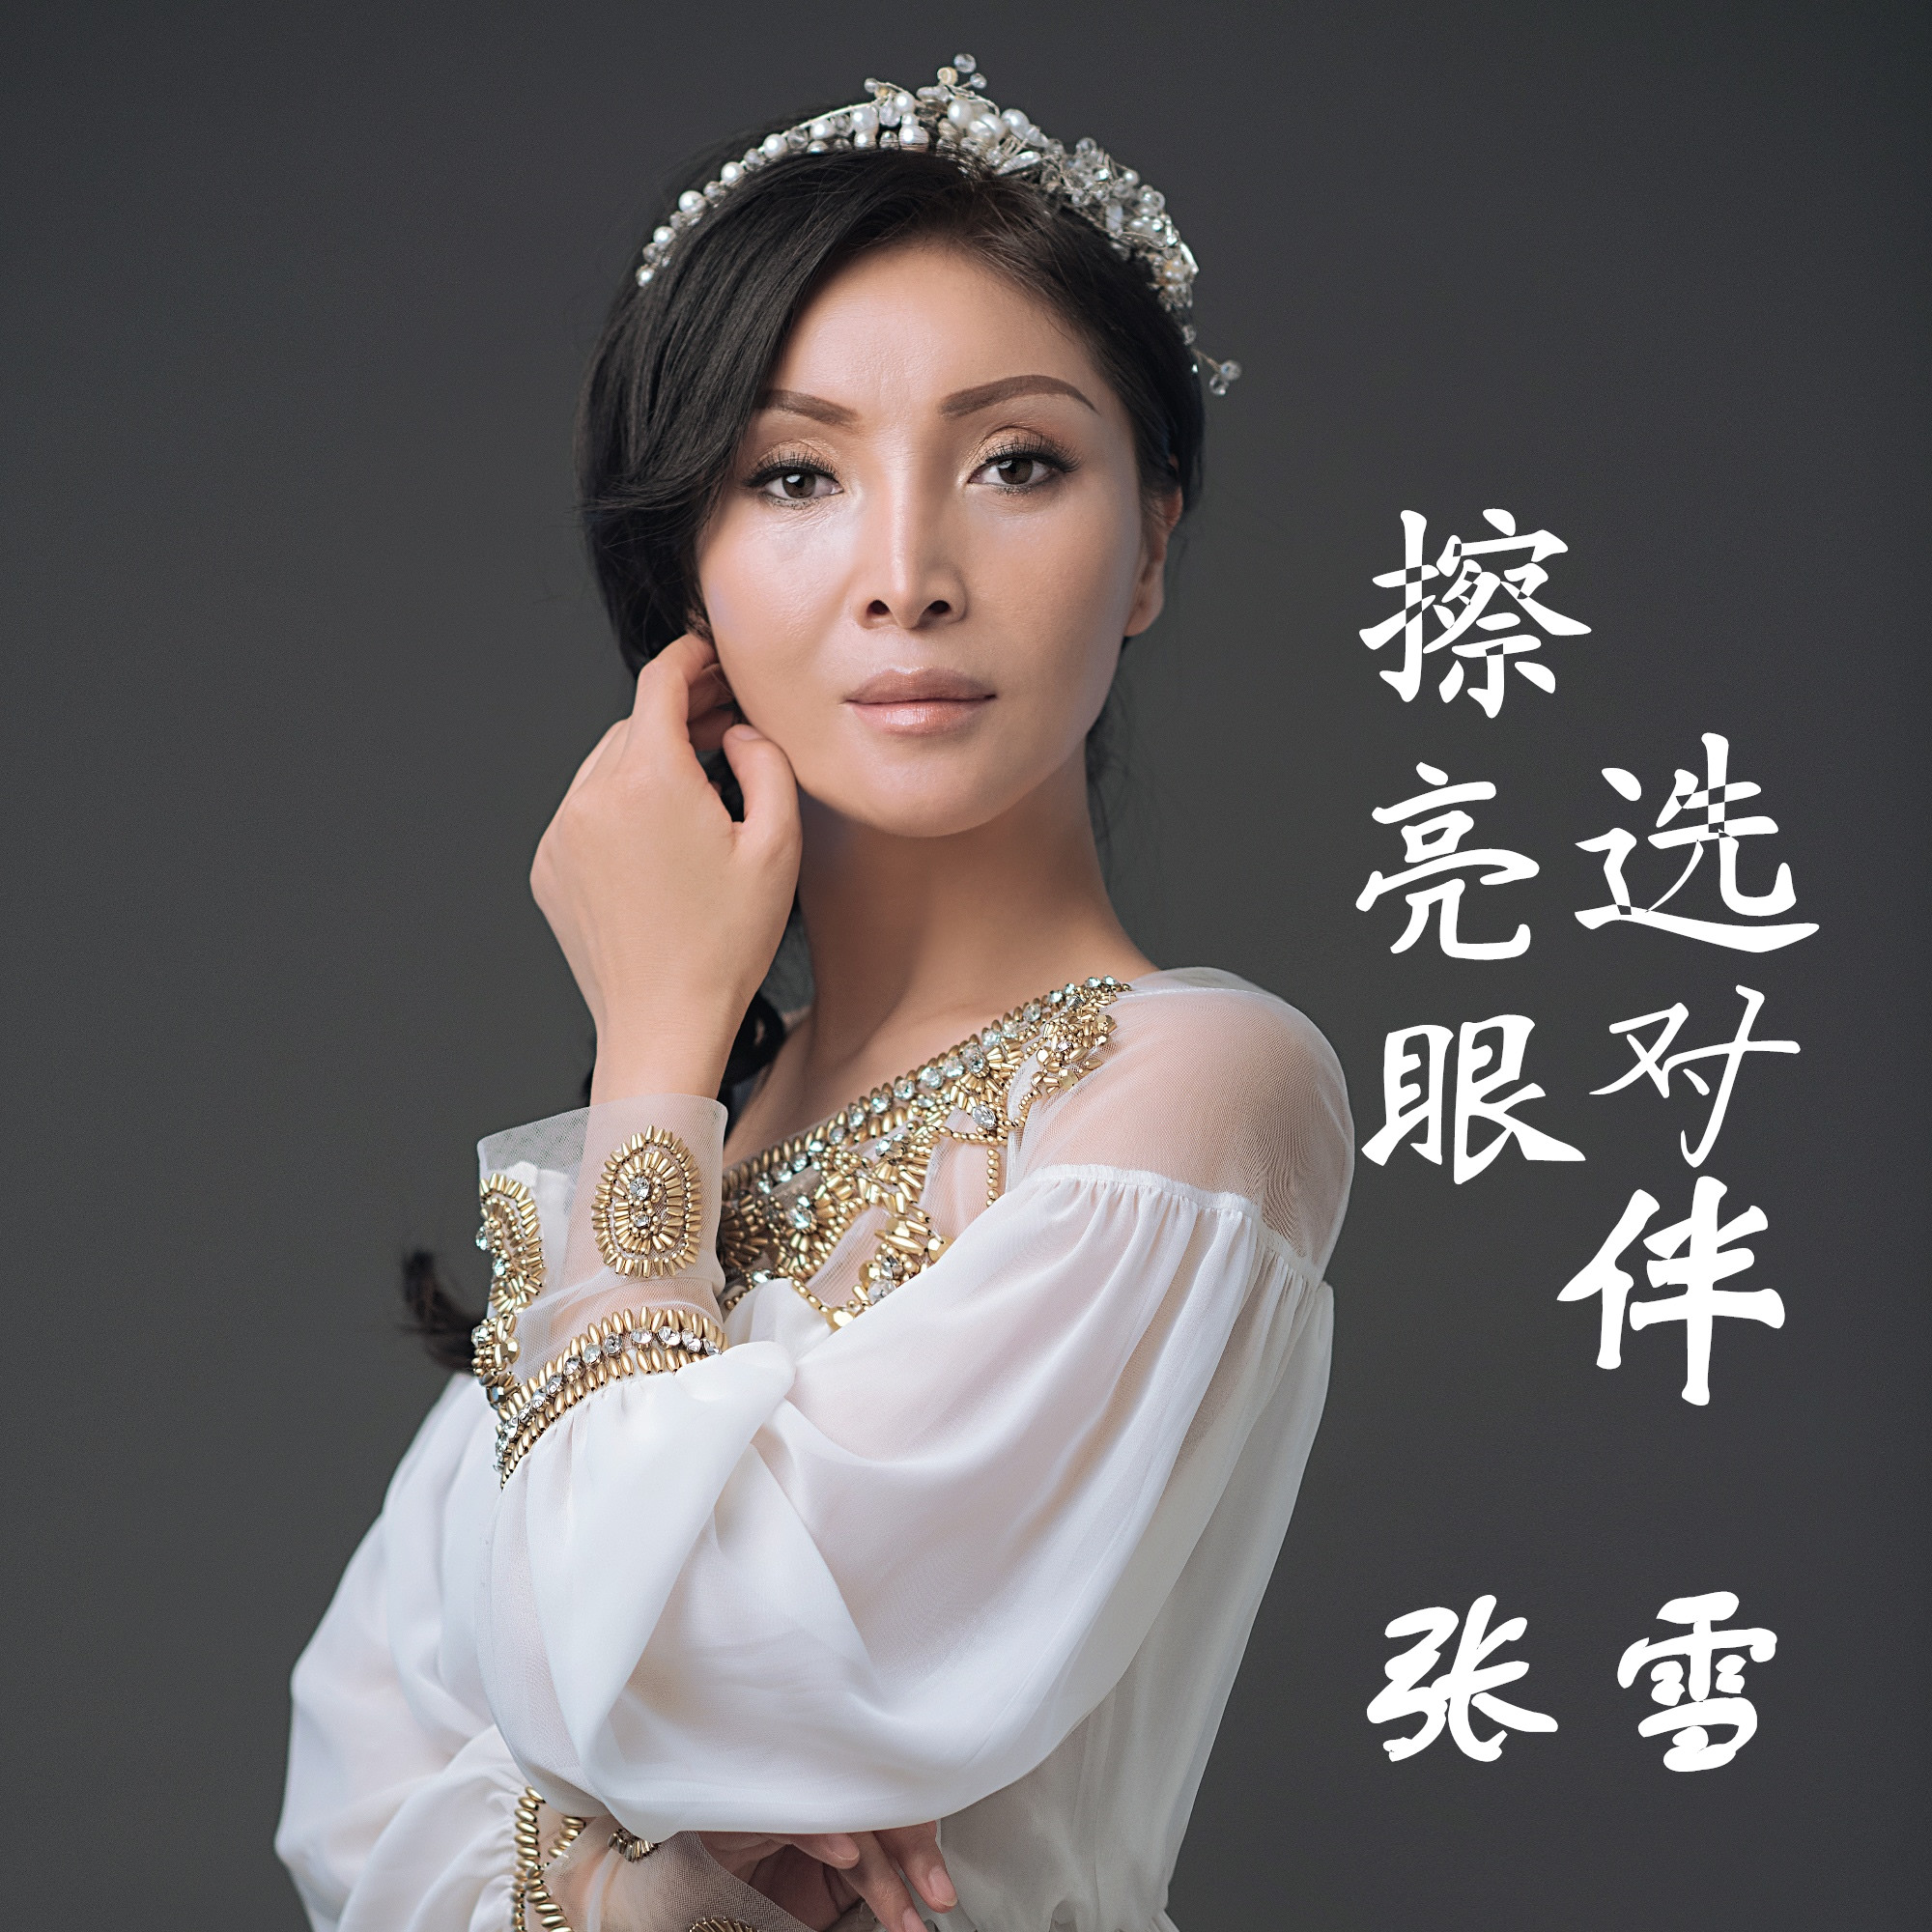 张雪,华语女歌手,出生于陕西西安,从小喜爱音乐,酷爱学习,多次下